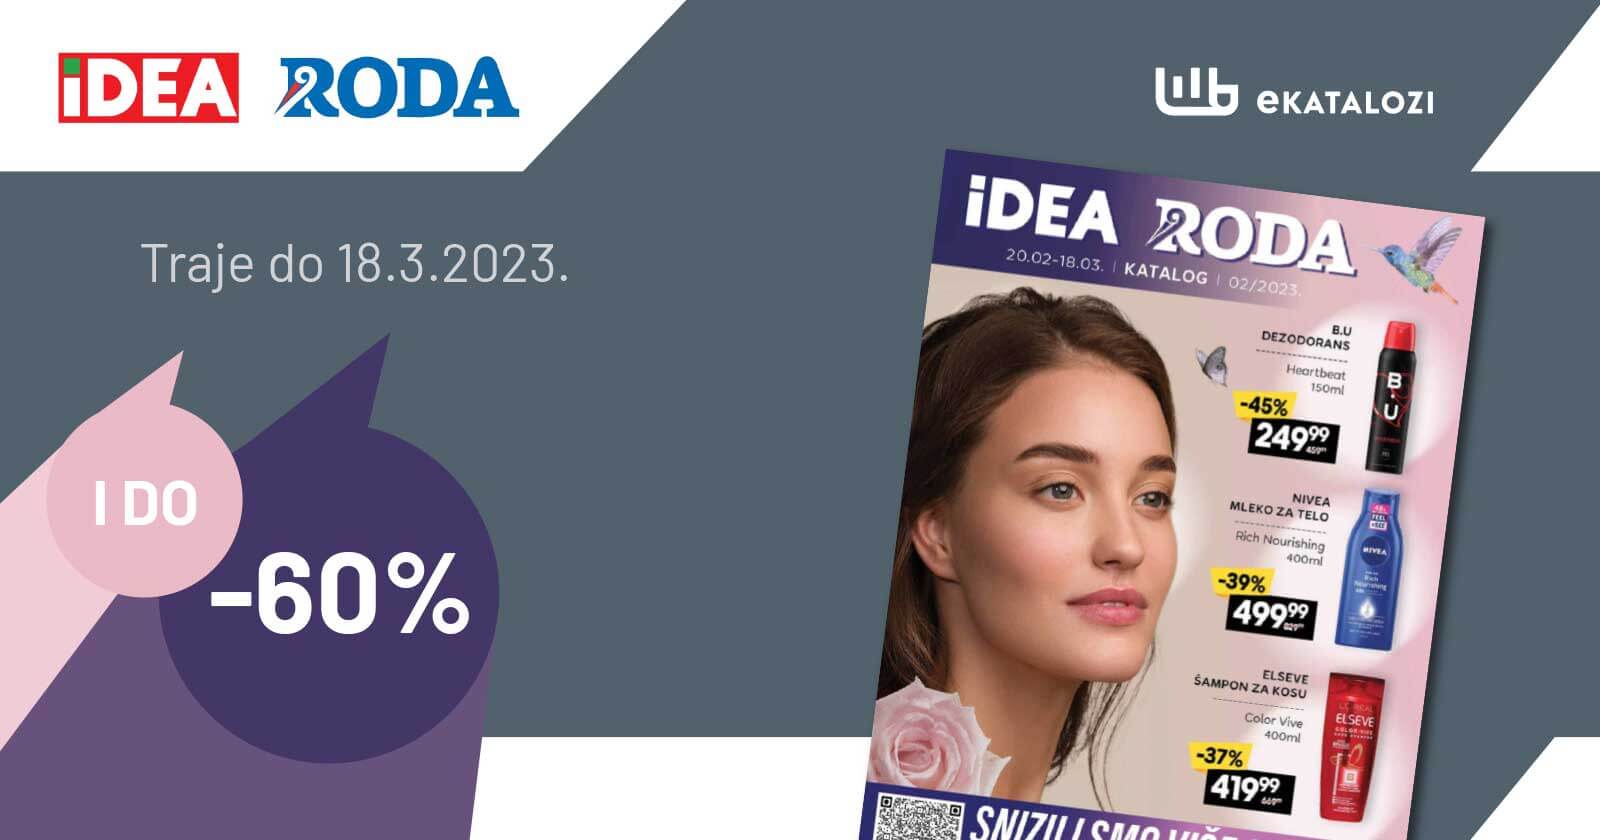 IDEA i RODA katalog FEBRUAR i MART 2023. Akcija traje od 20.2. do 18.3.2023.